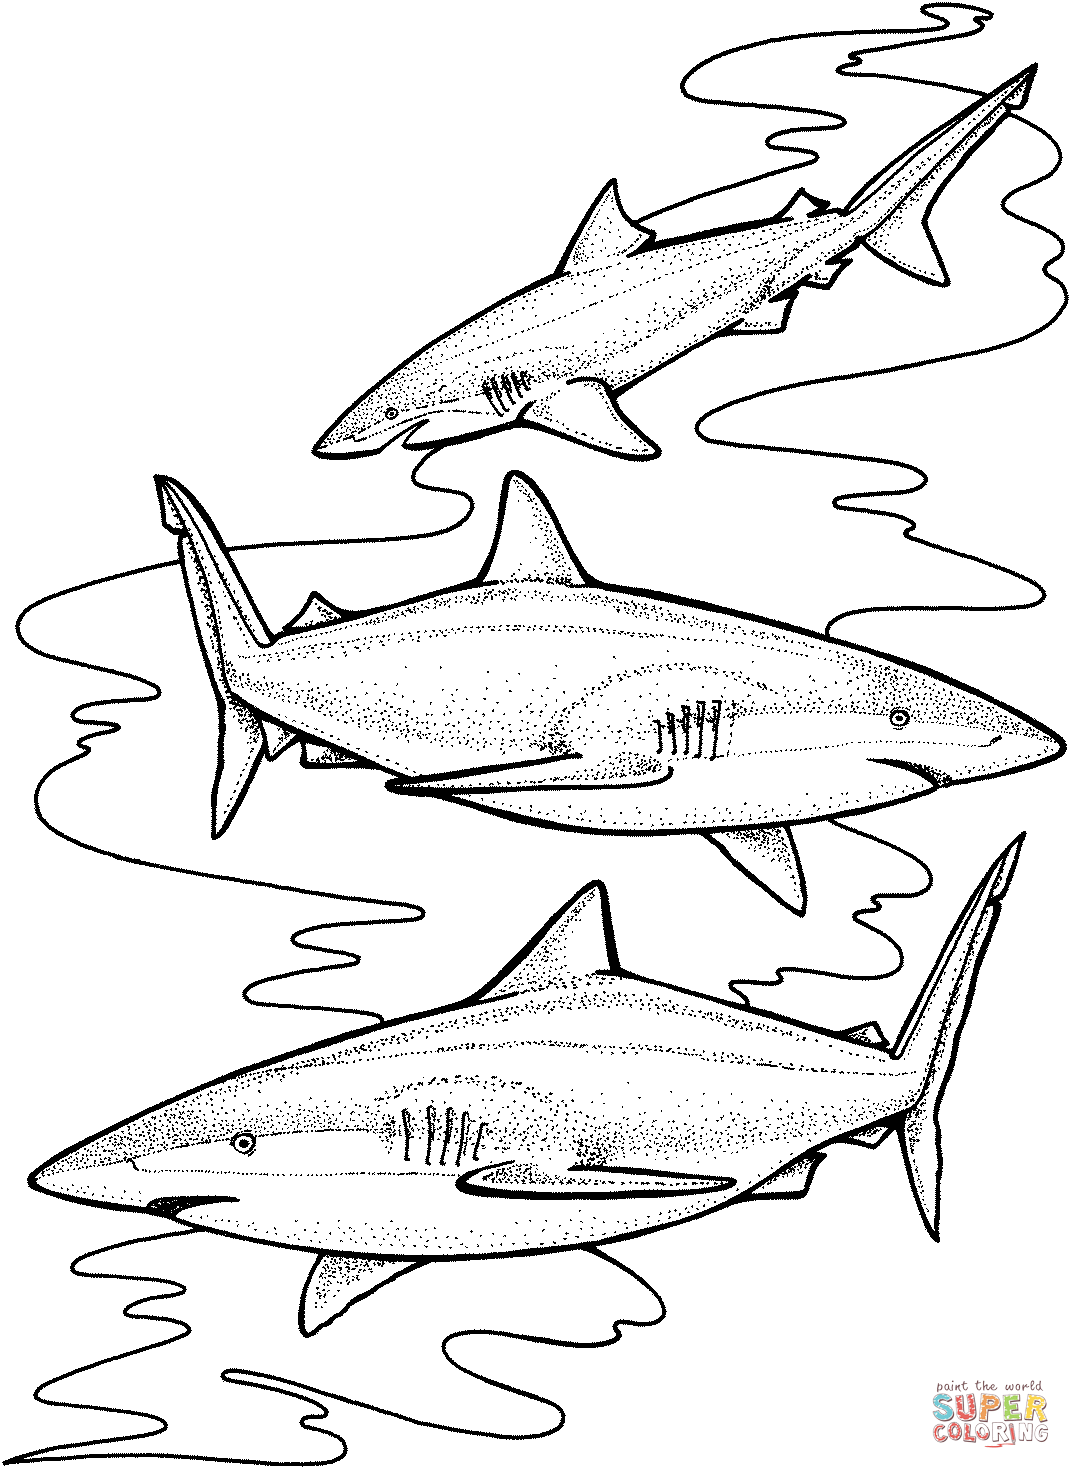 Three tiger sharks